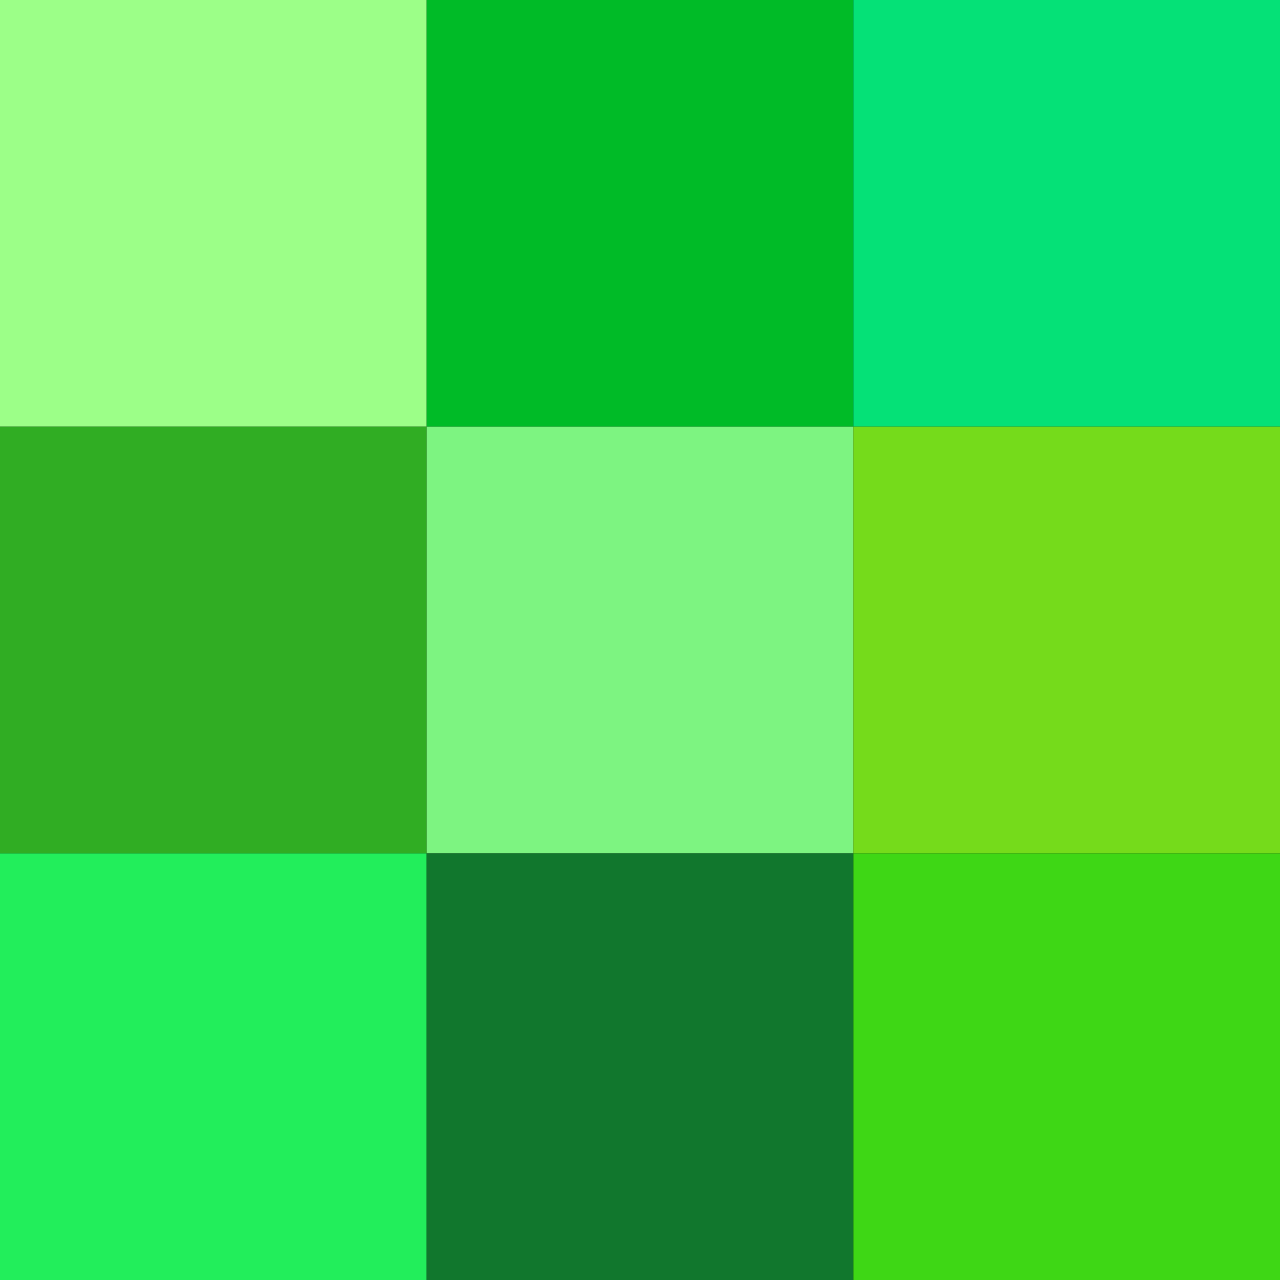 11472 صور لون اخضر - اجمل الصور باللون الاخضر عيناء ازاهير